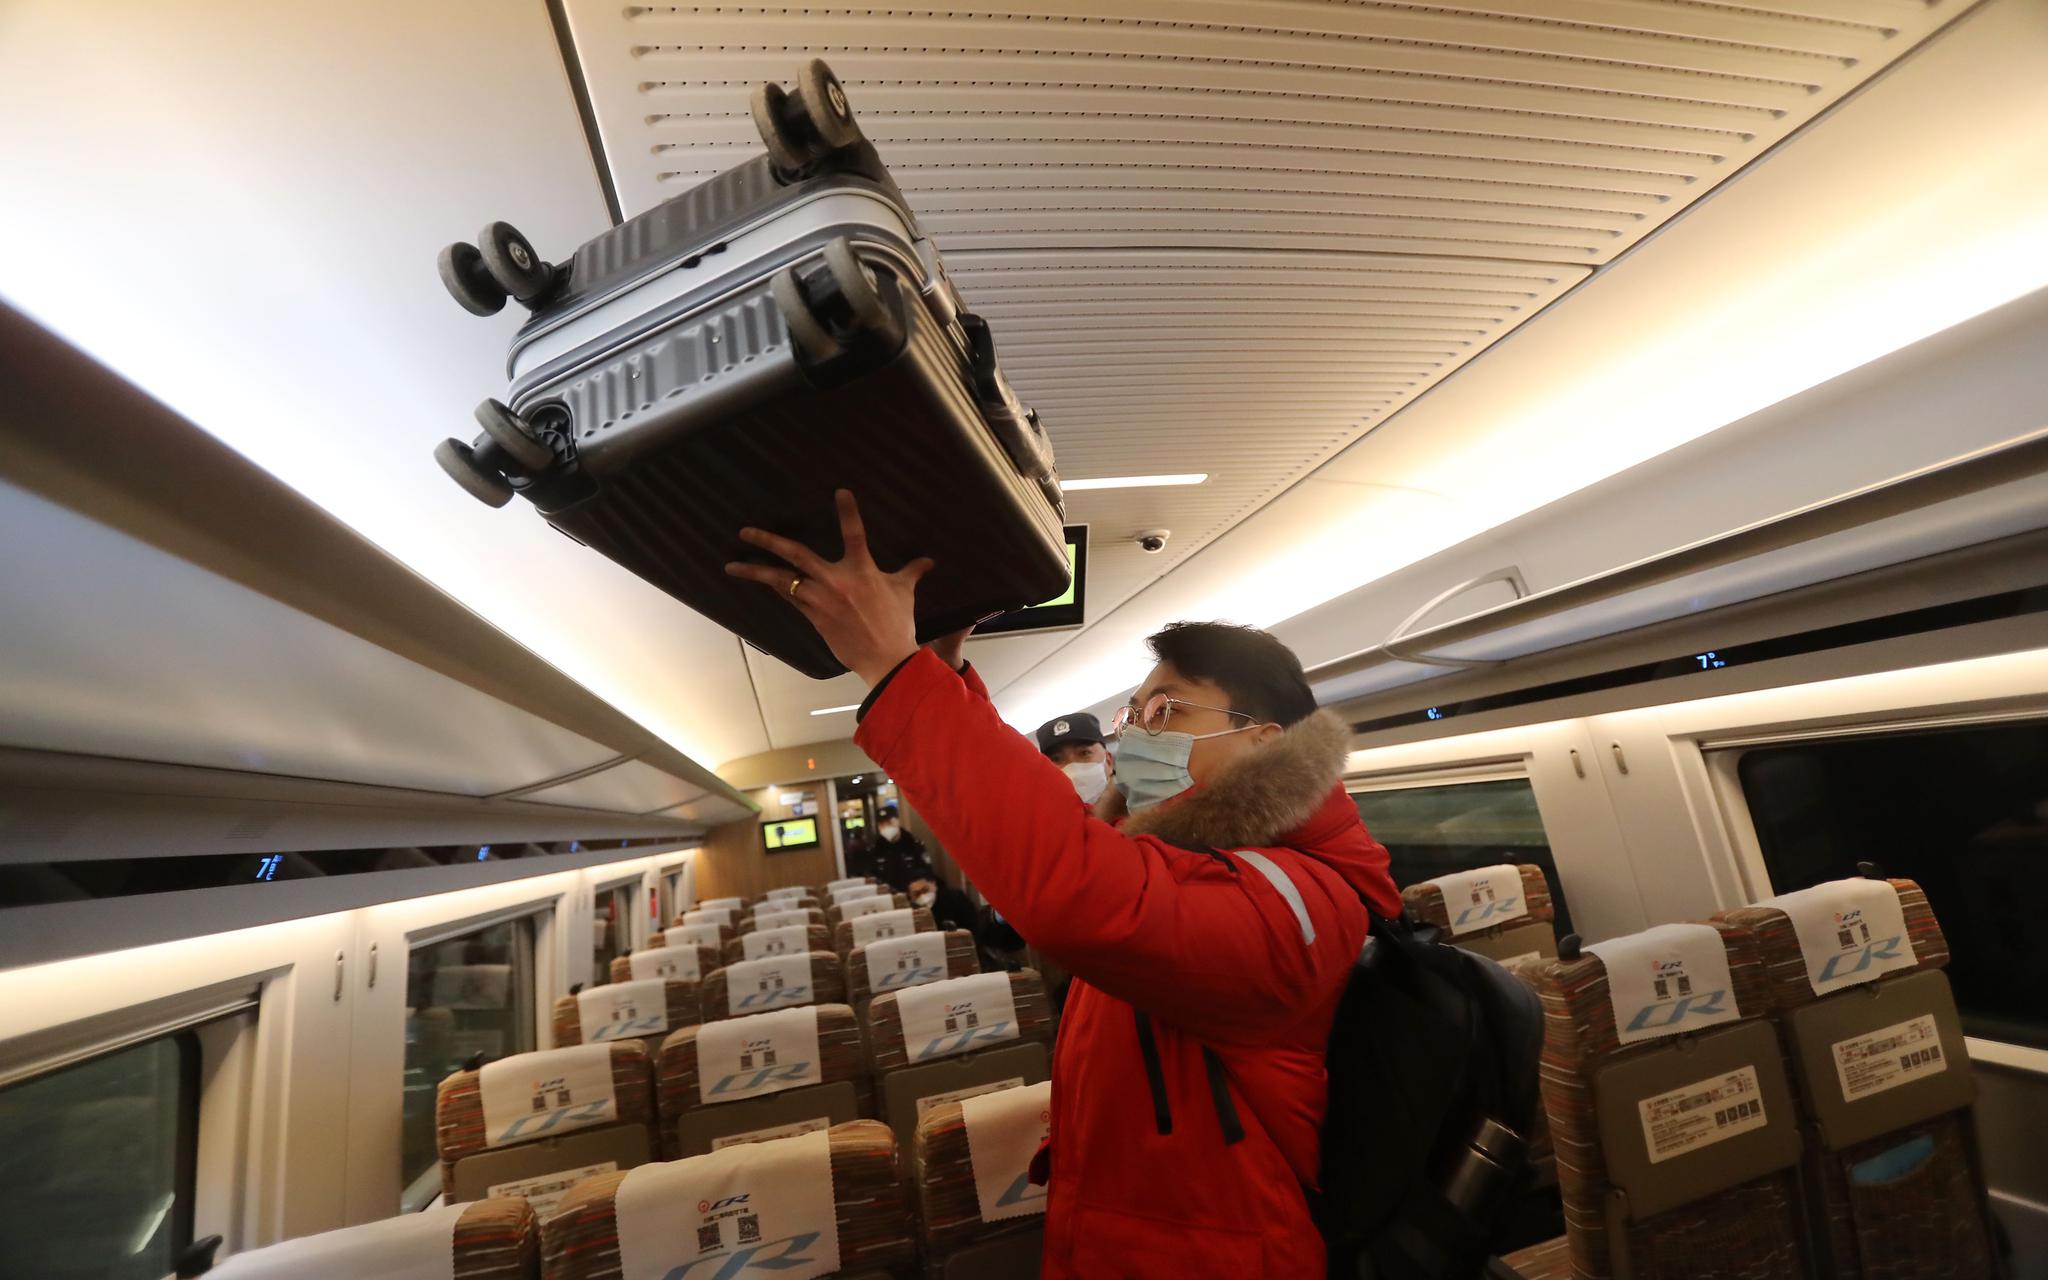 列车内,旅客在码放行李箱.摄影/新京报记者 王贵彬